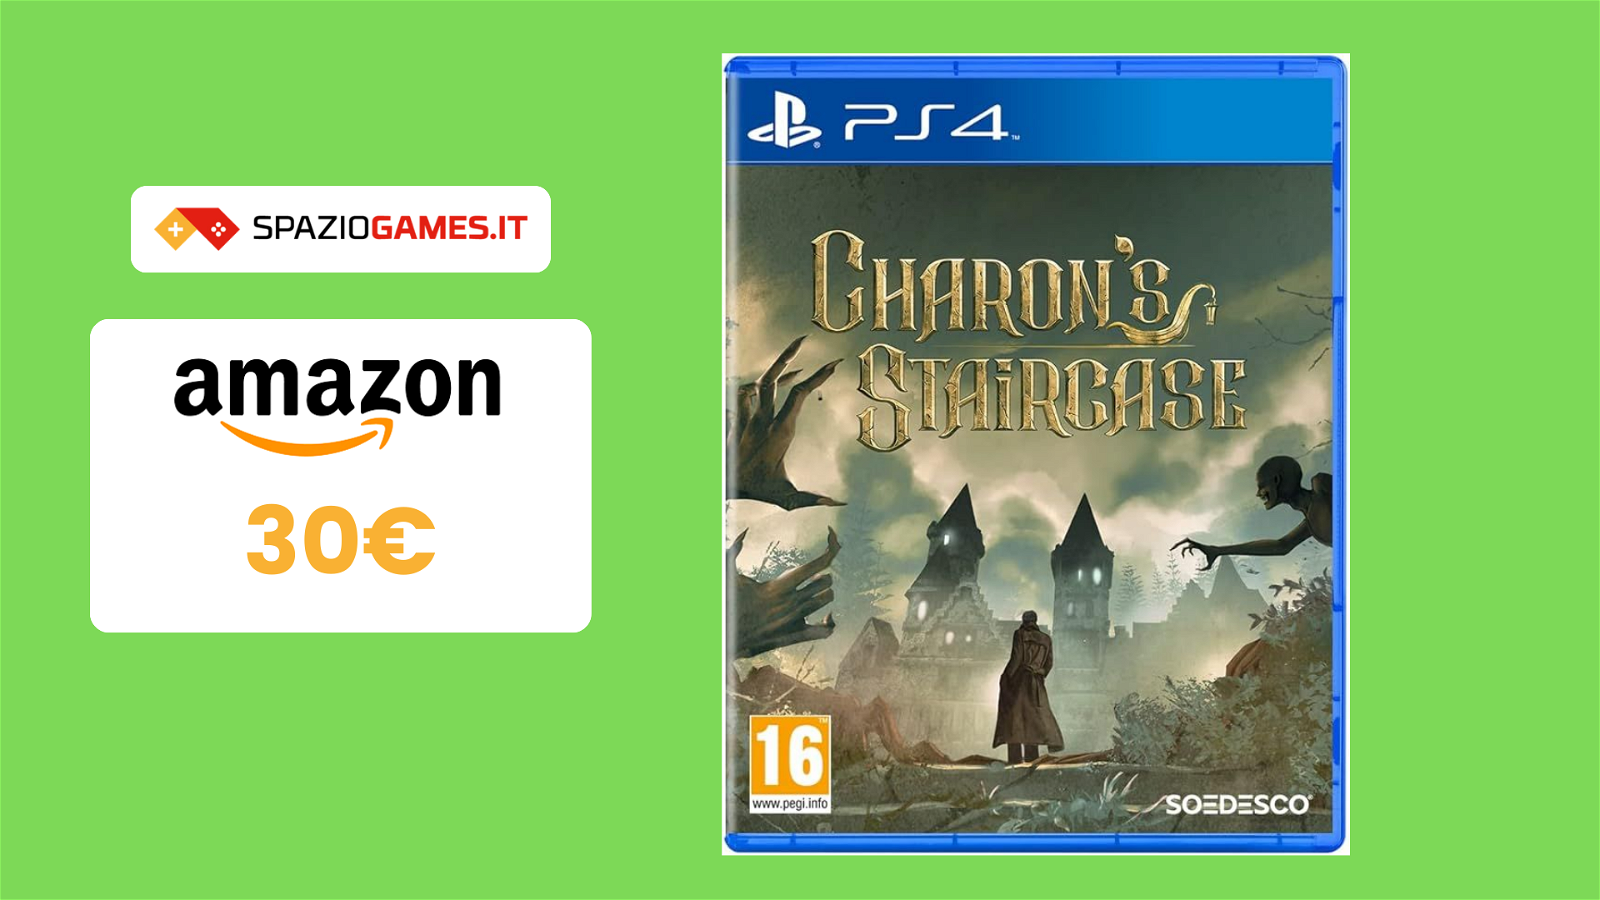 Charon's Staircase per PS4 a 30€ tra enigmi e misteri!